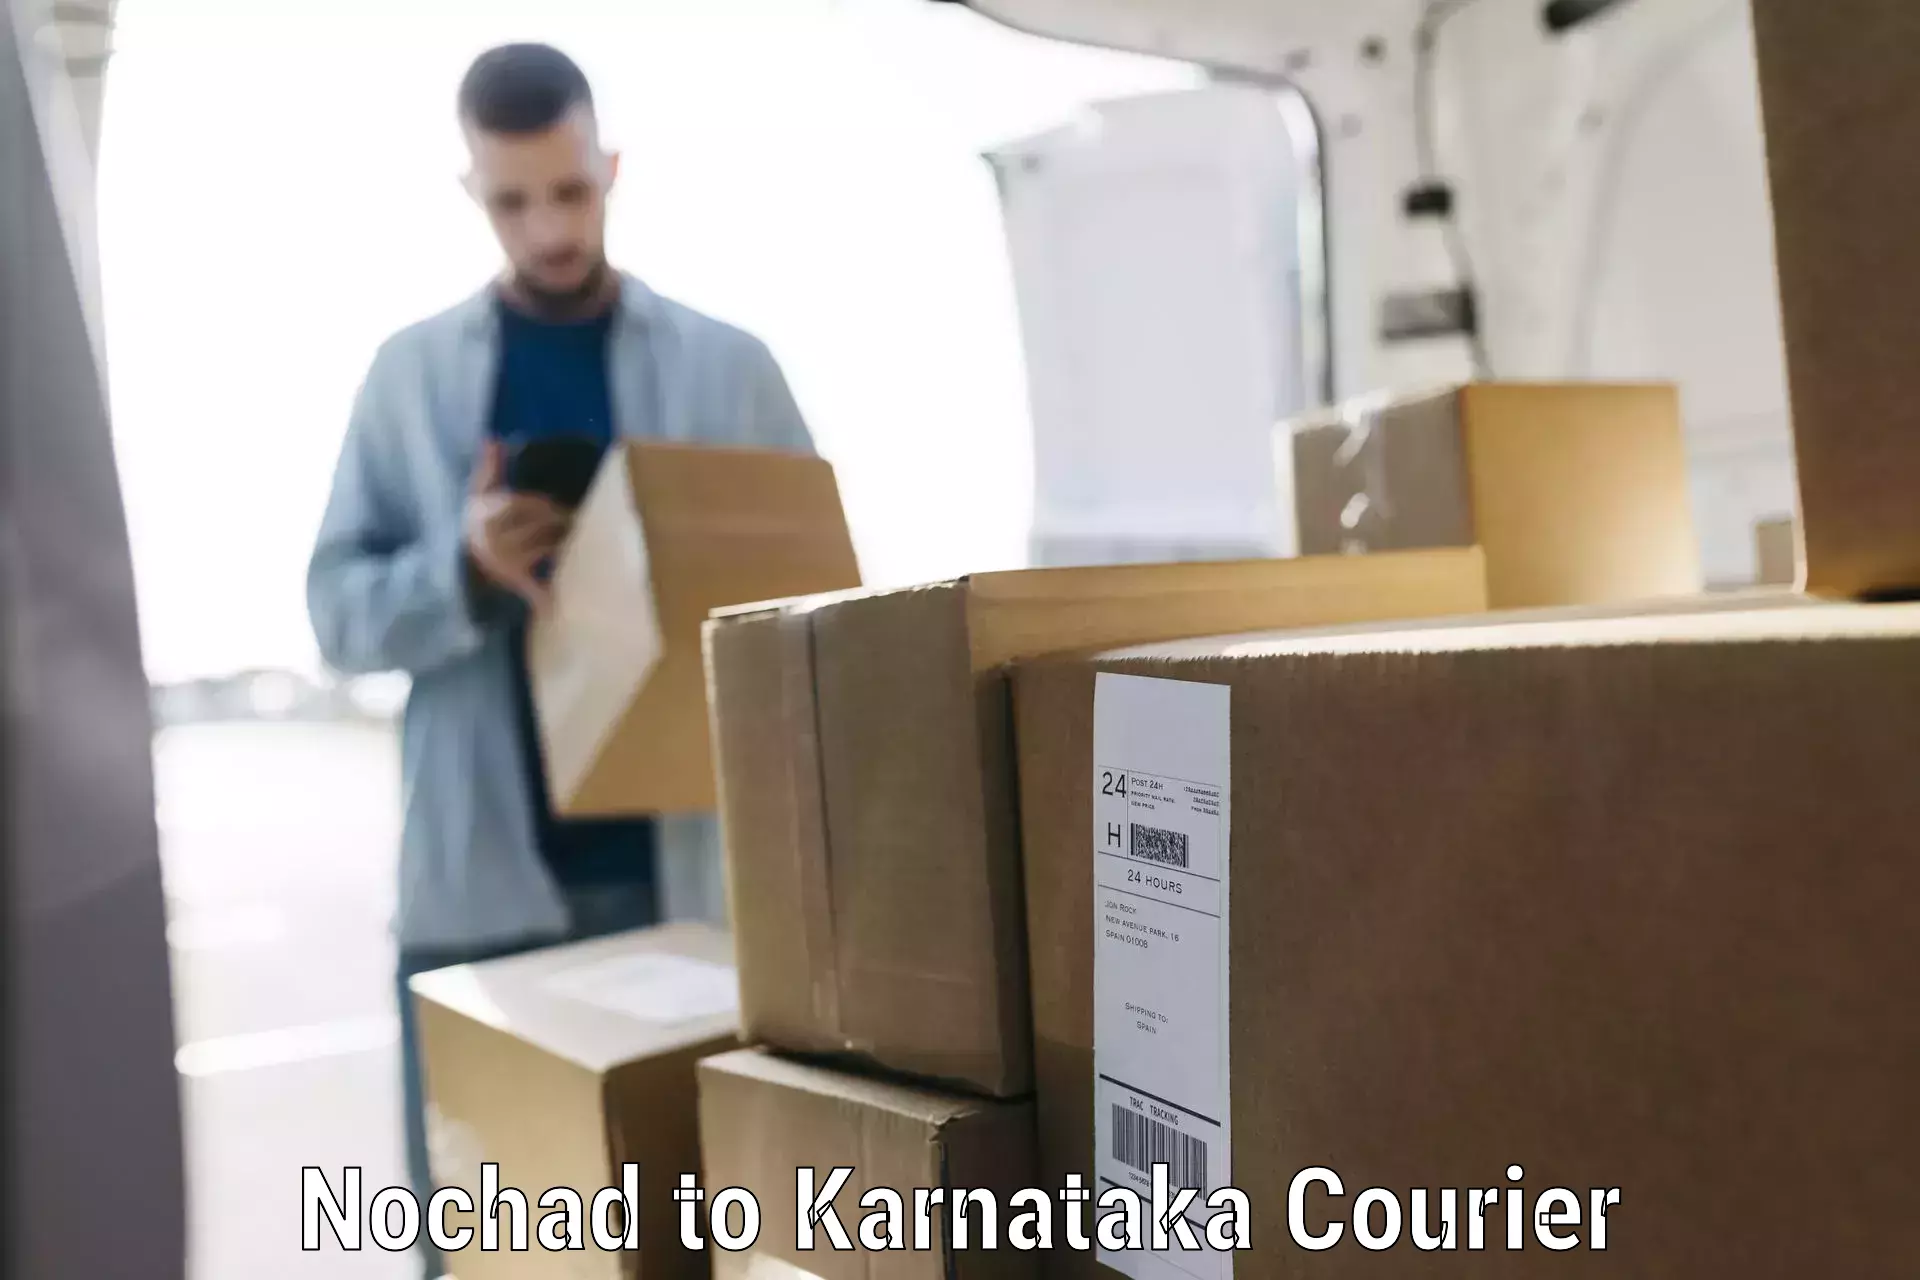 Electronic items luggage shipping Nochad to Bangarapet